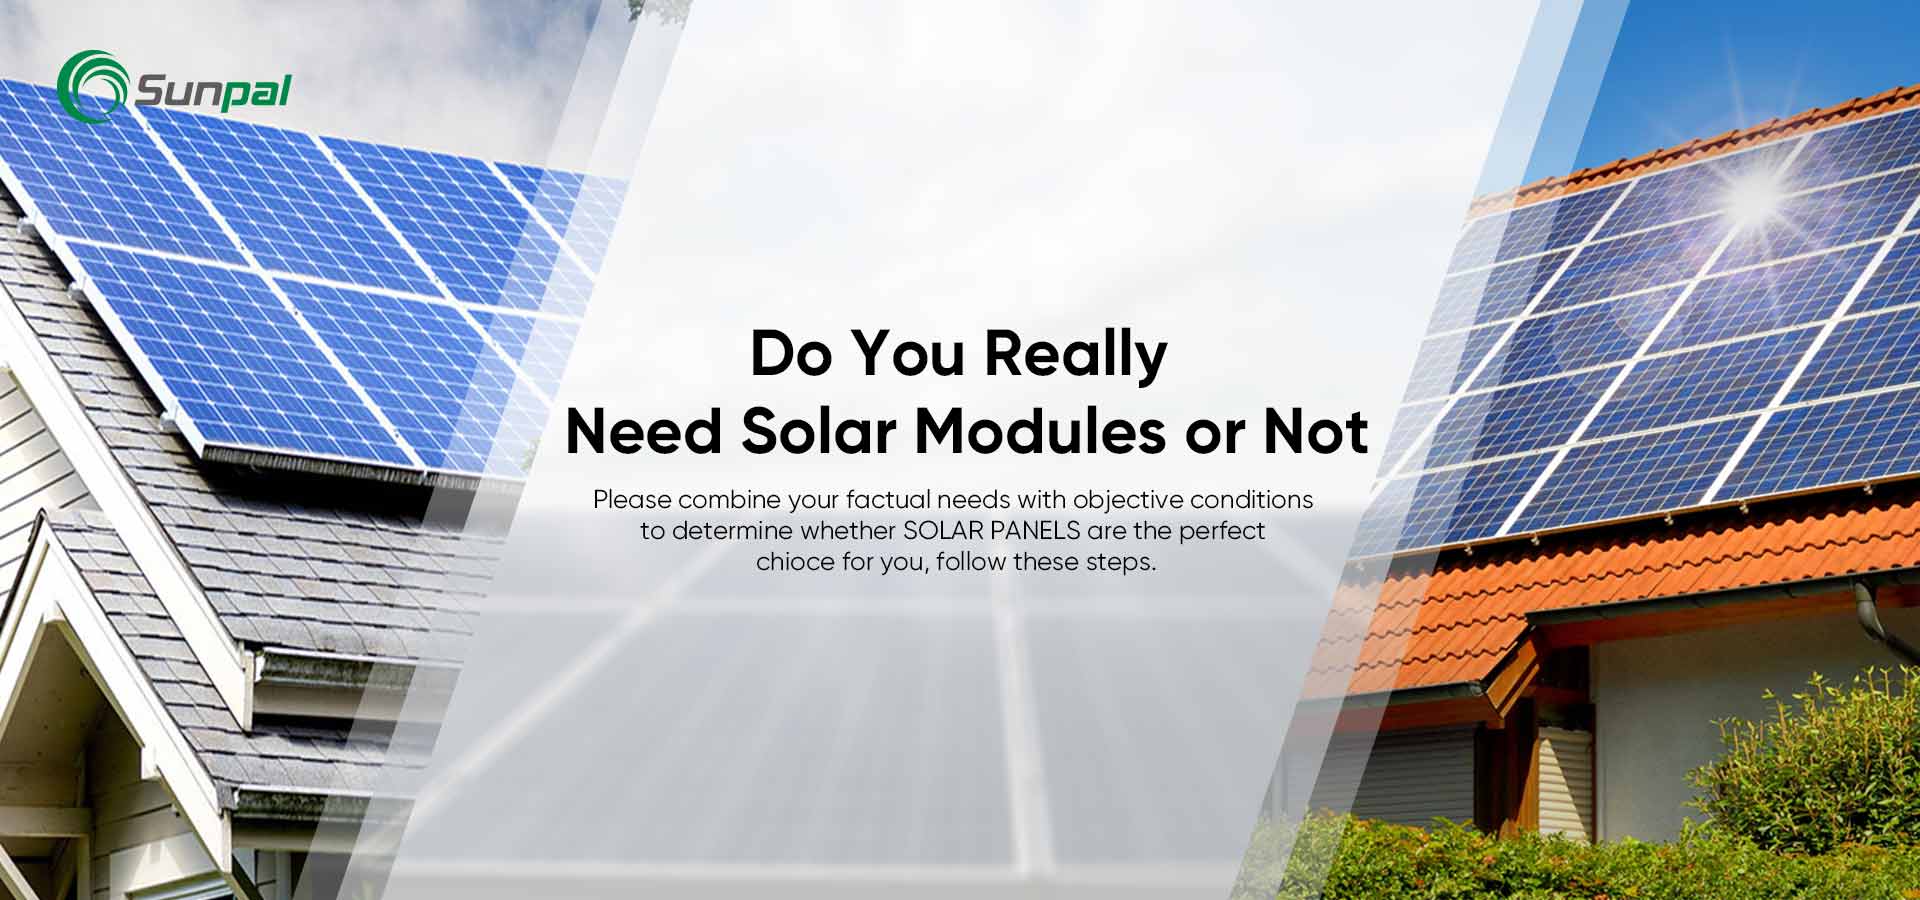 แผงโซลาร์เซลล์เหมาะกับคุณหรือไม่? 8 สัญญาณคุณควรไปพลังงานแสงอาทิตย์